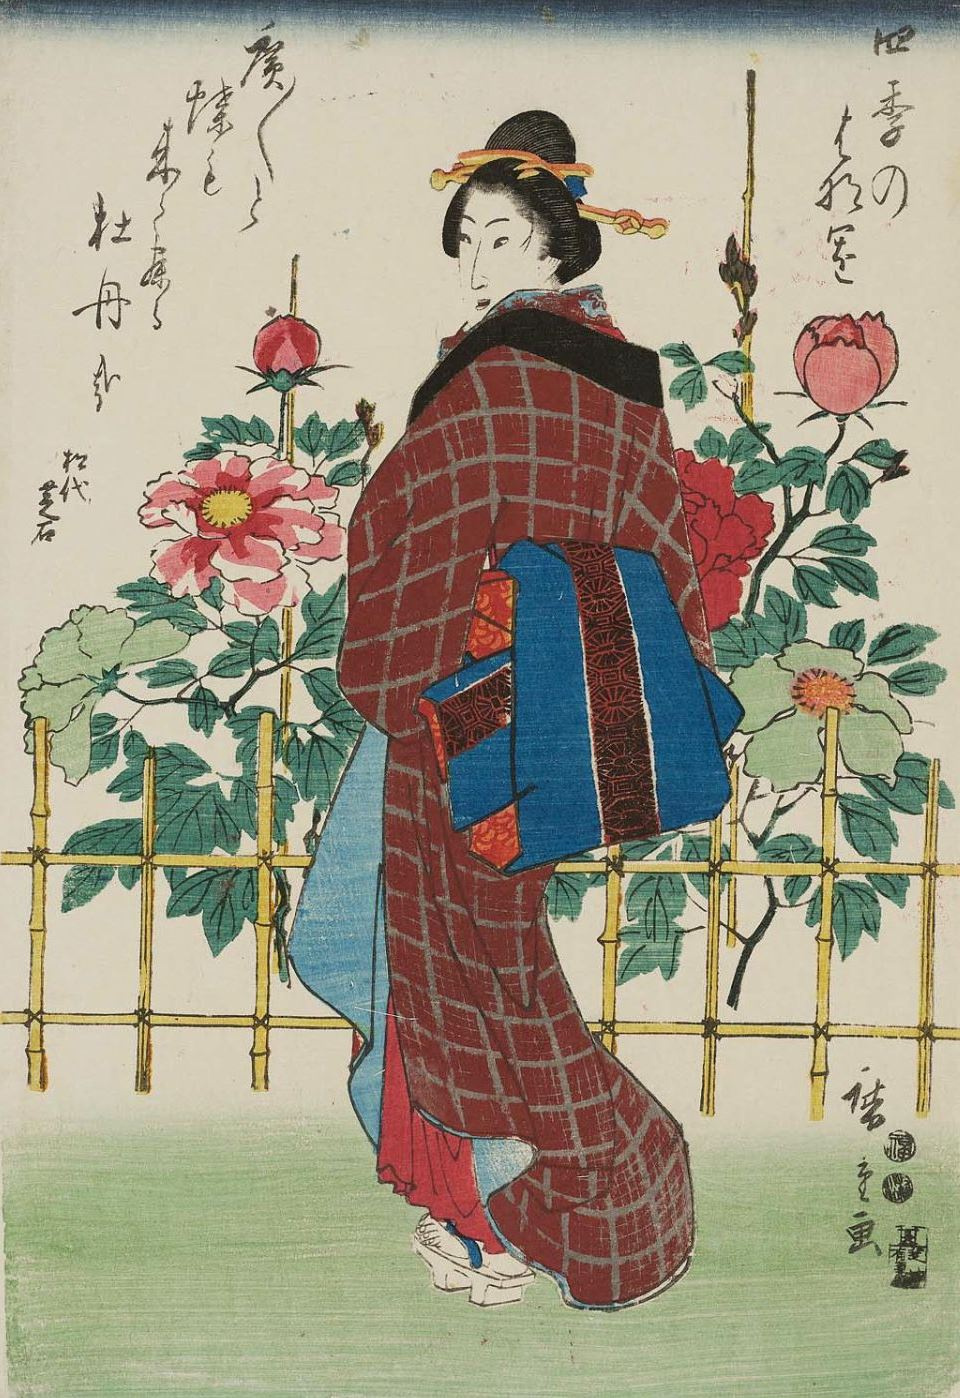 Utagawa Hiroshige. In the garden with peonies